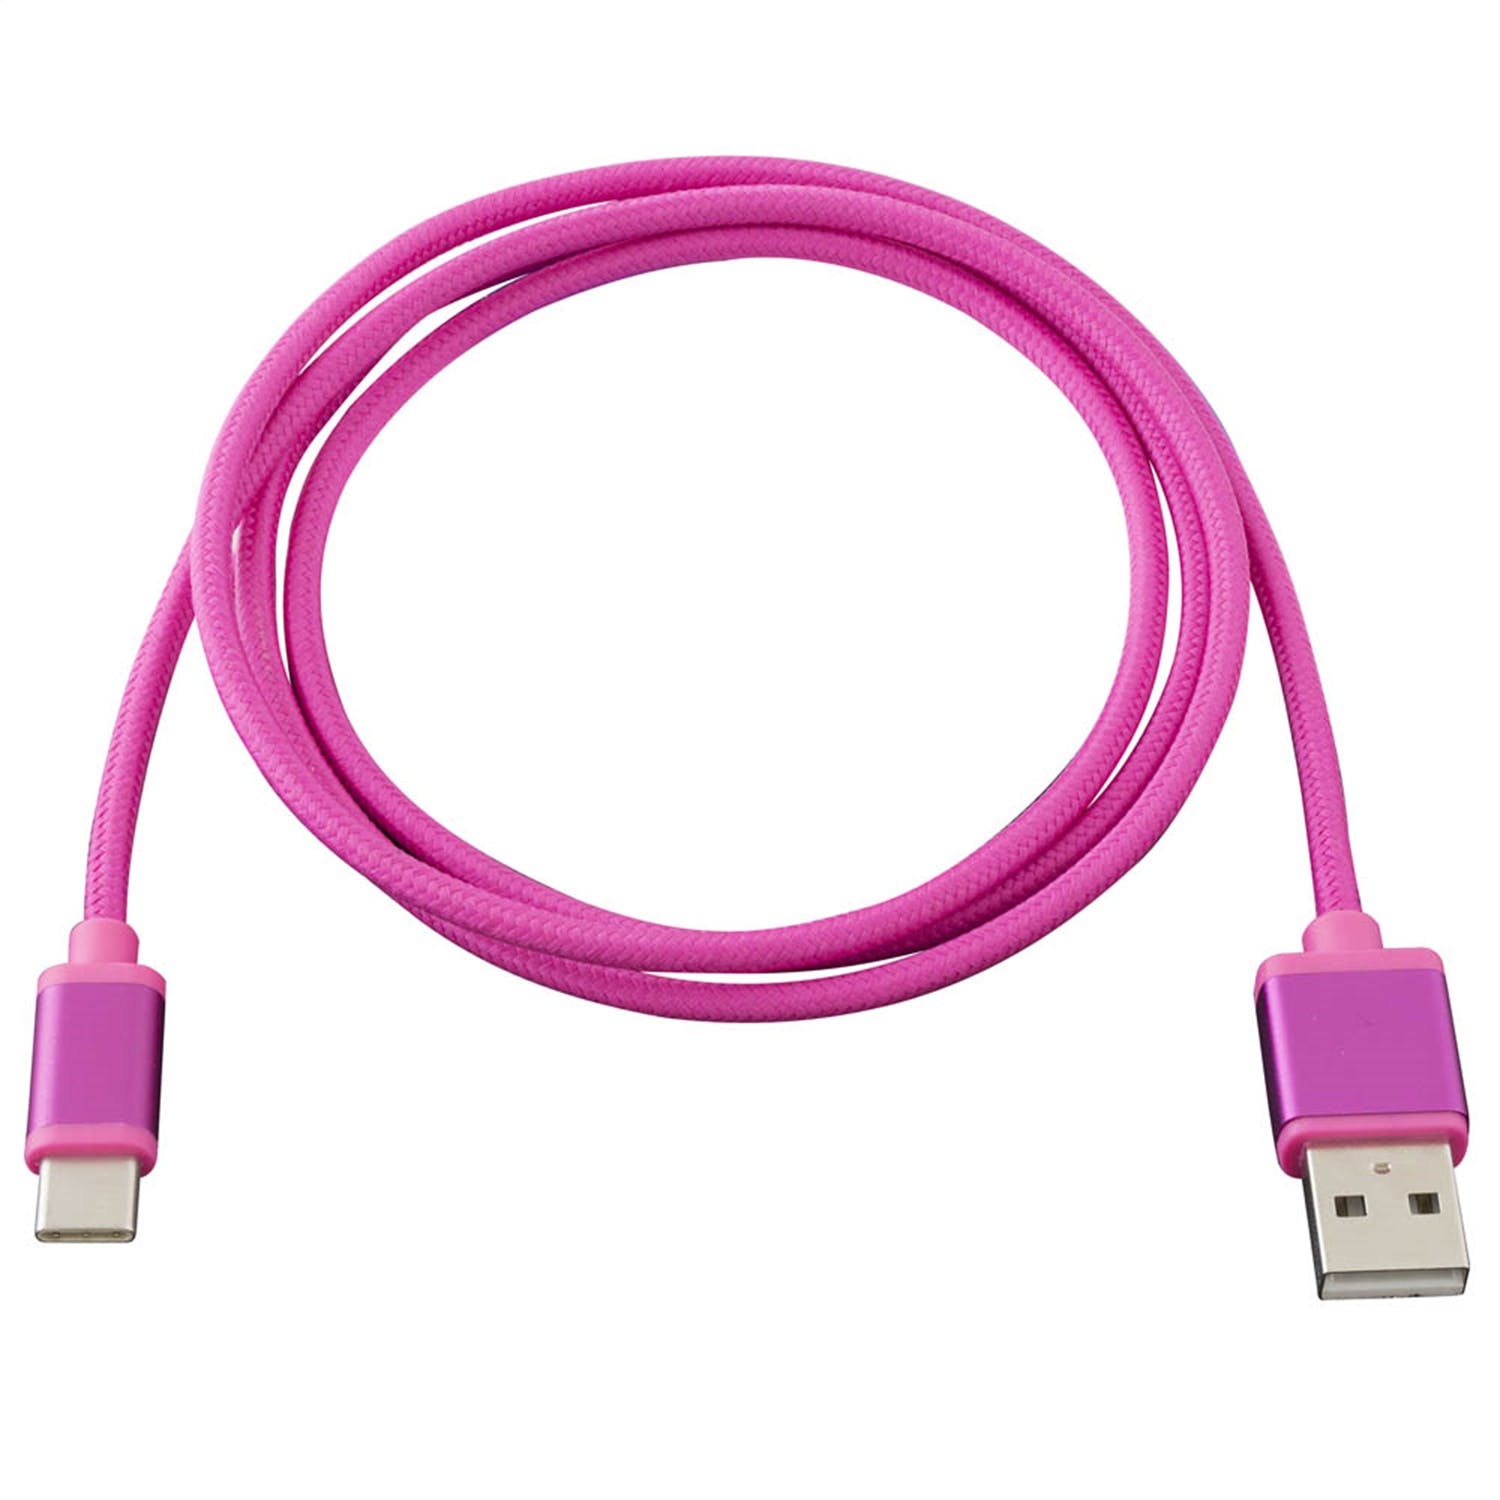 Metra Electronics AXUSBC-PK USB Type C Cable